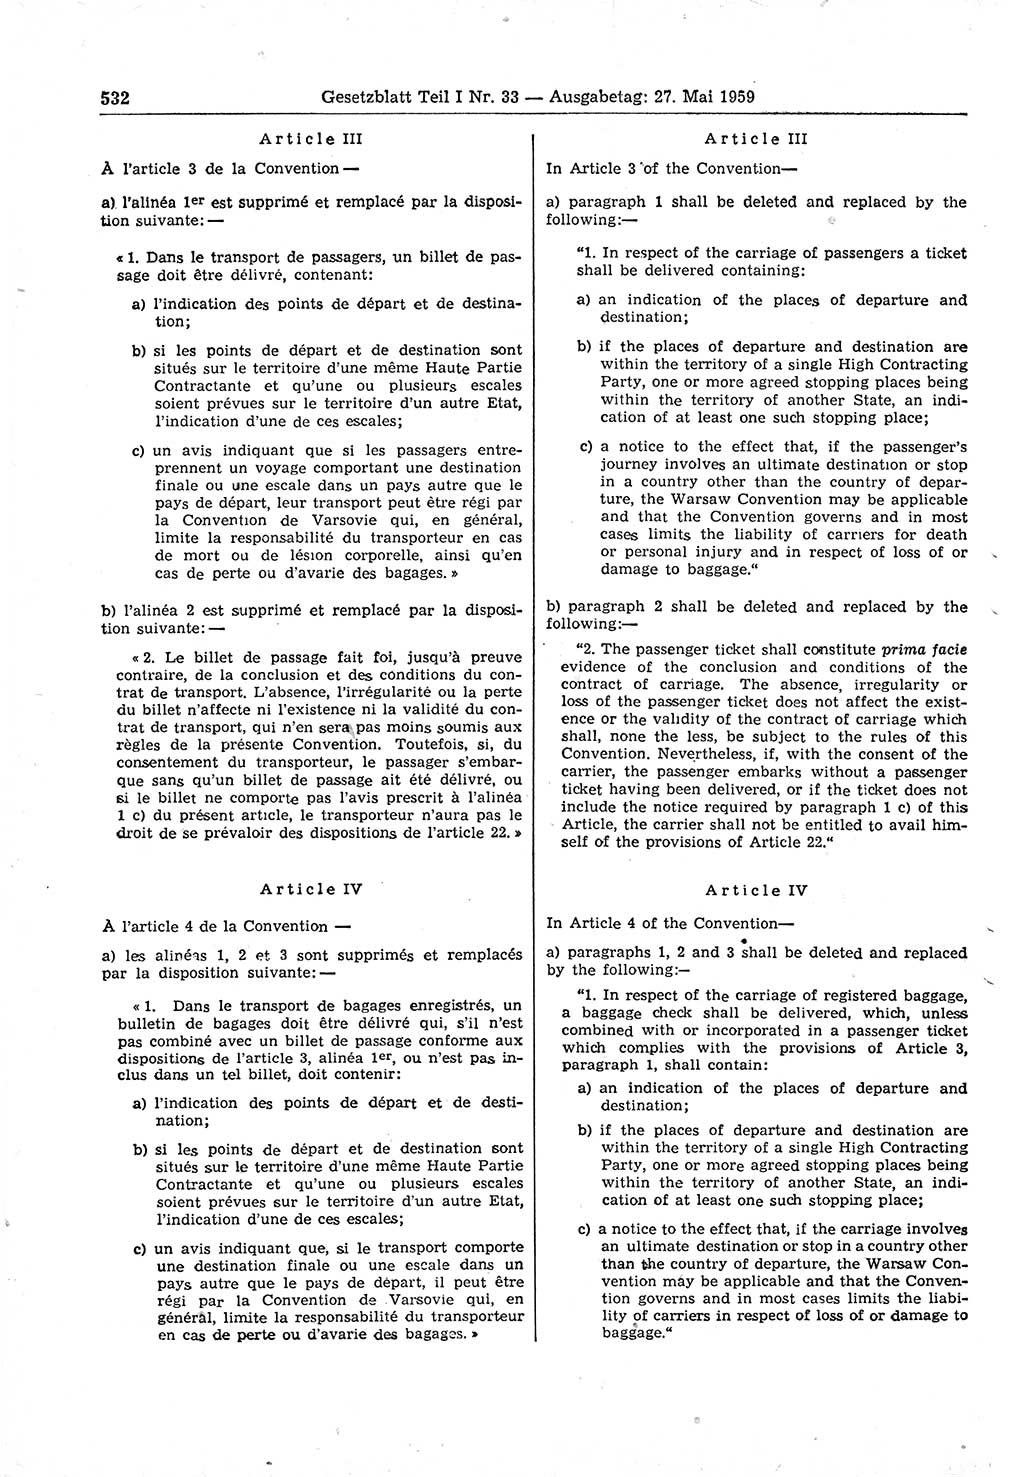 Gesetzblatt (GBl.) der Deutschen Demokratischen Republik (DDR) Teil Ⅰ 1959, Seite 532 (GBl. DDR Ⅰ 1959, S. 532)